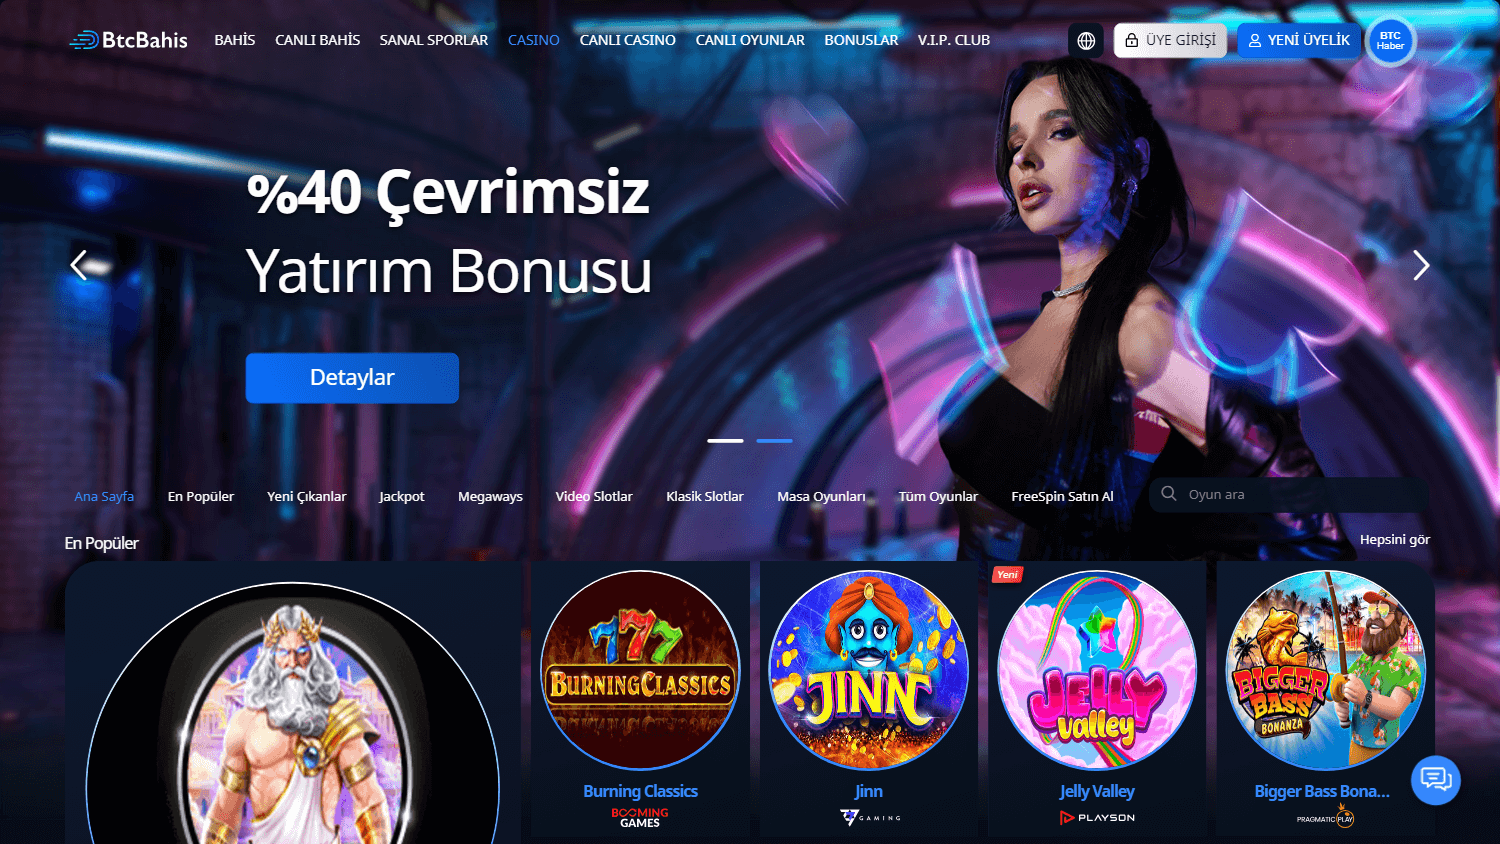 btcbahis_casino_game_gallery_desktop